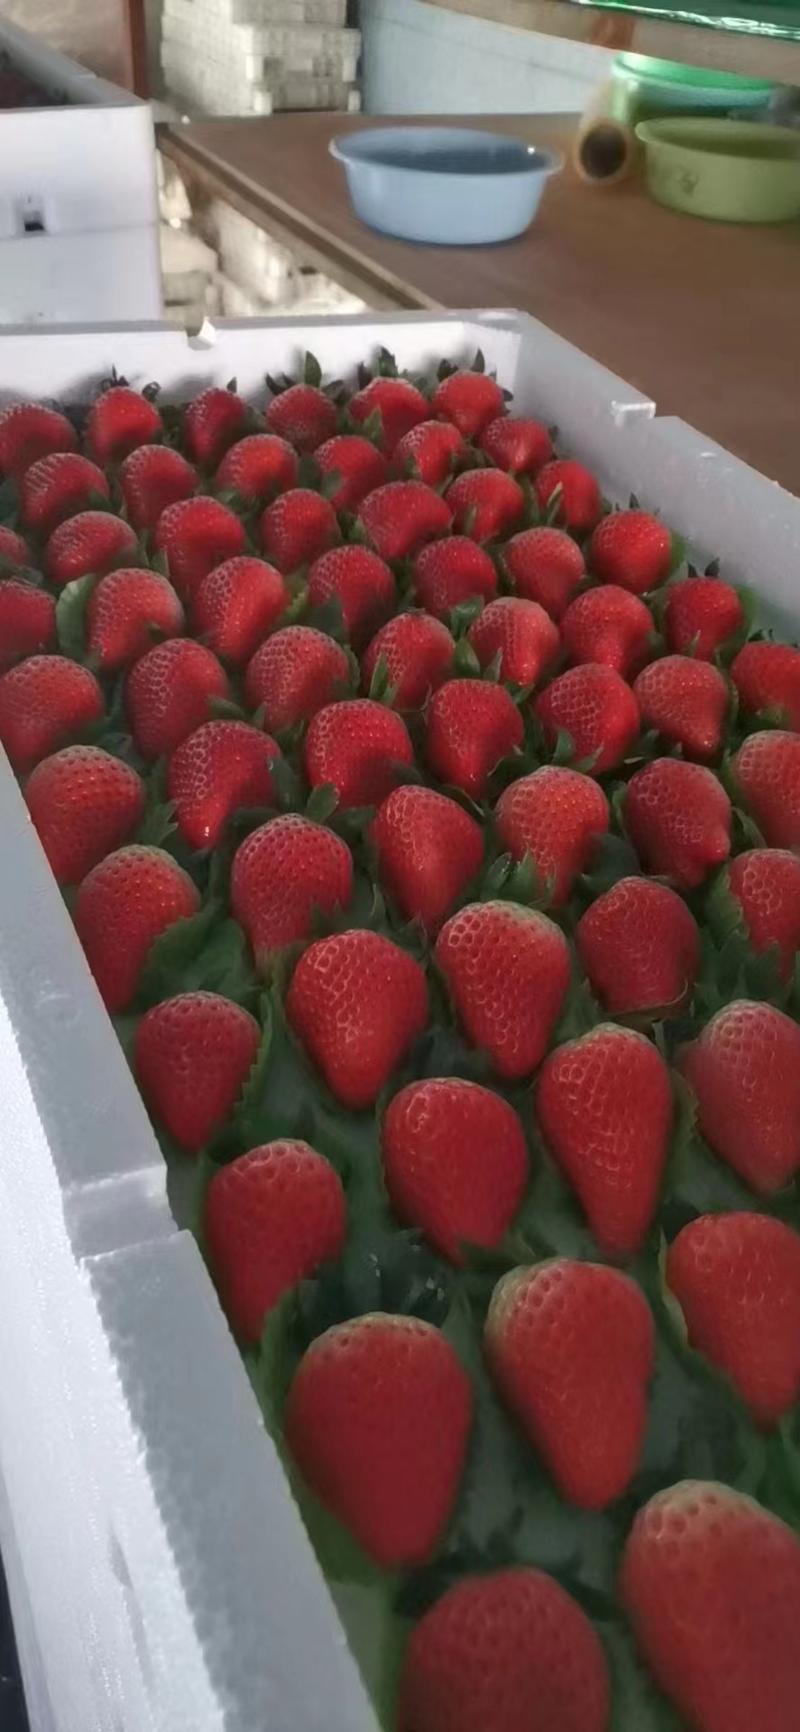 奶油草莓平度草莓免洗草莓规格齐全货源充足全国可达保证新鲜